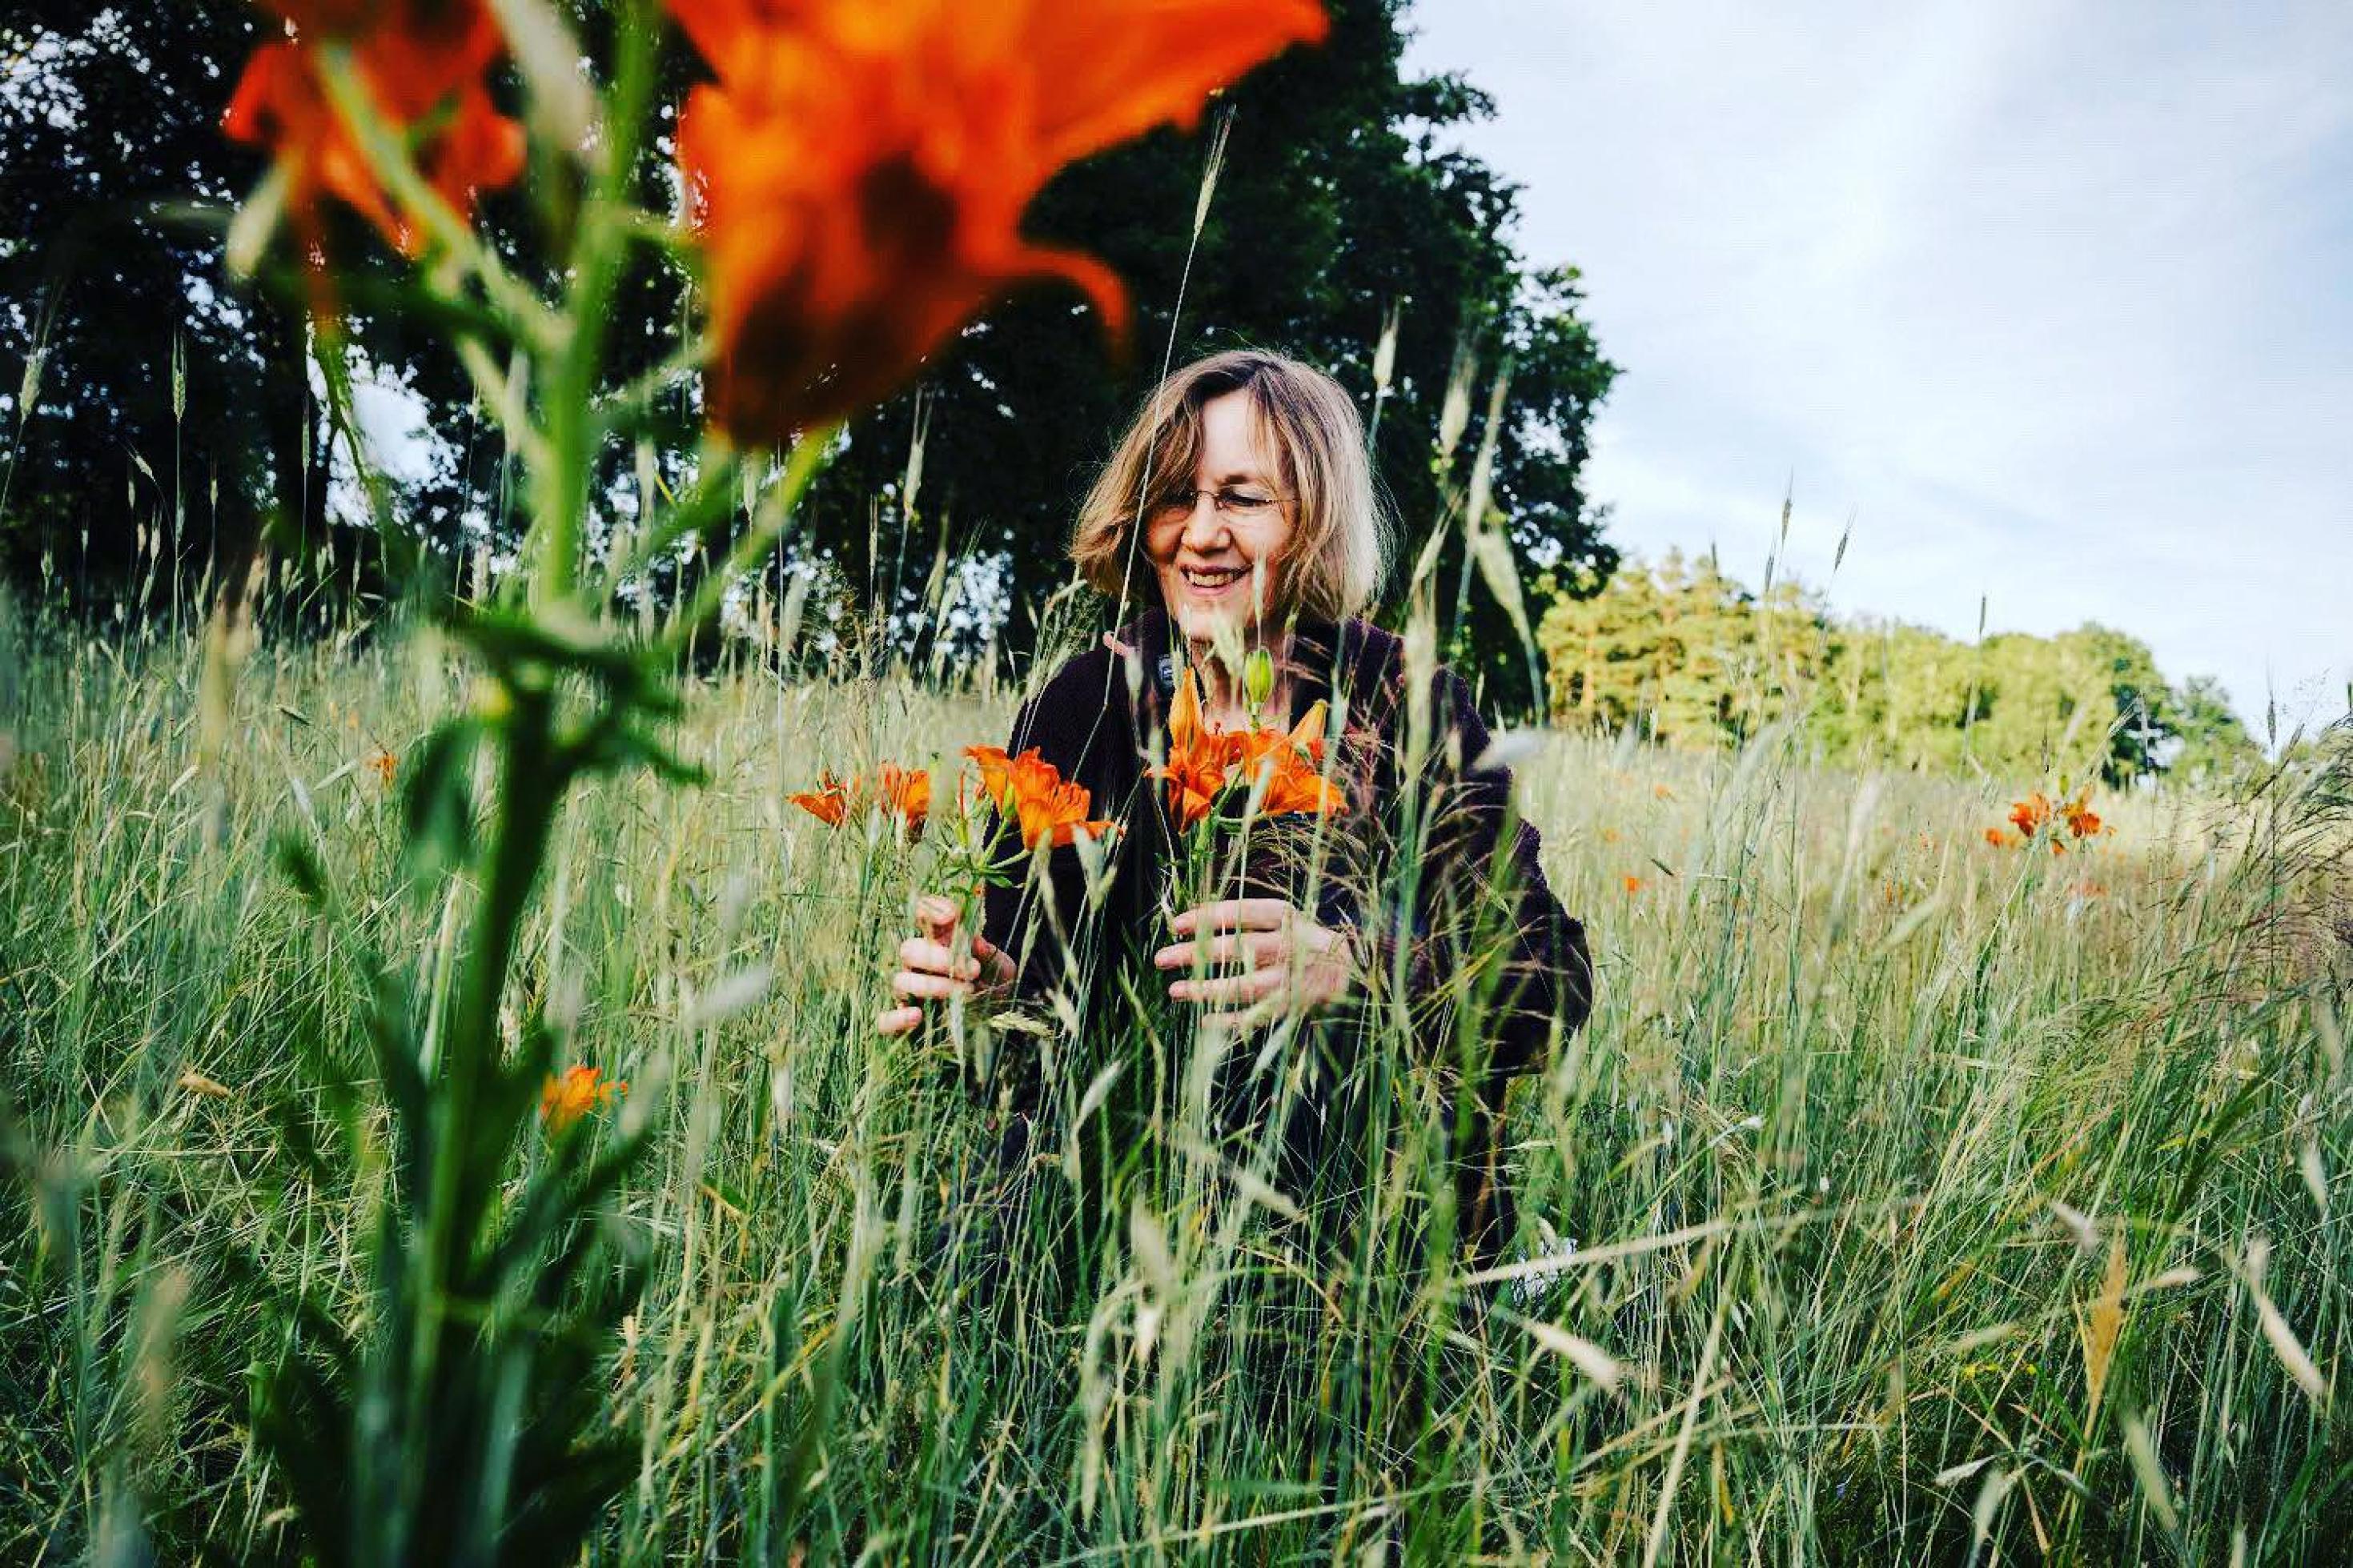 Eine Frau hockt im hohen Gras und hält eine orangefarbene Blume zwischen den Fingern. Sie lächelt.